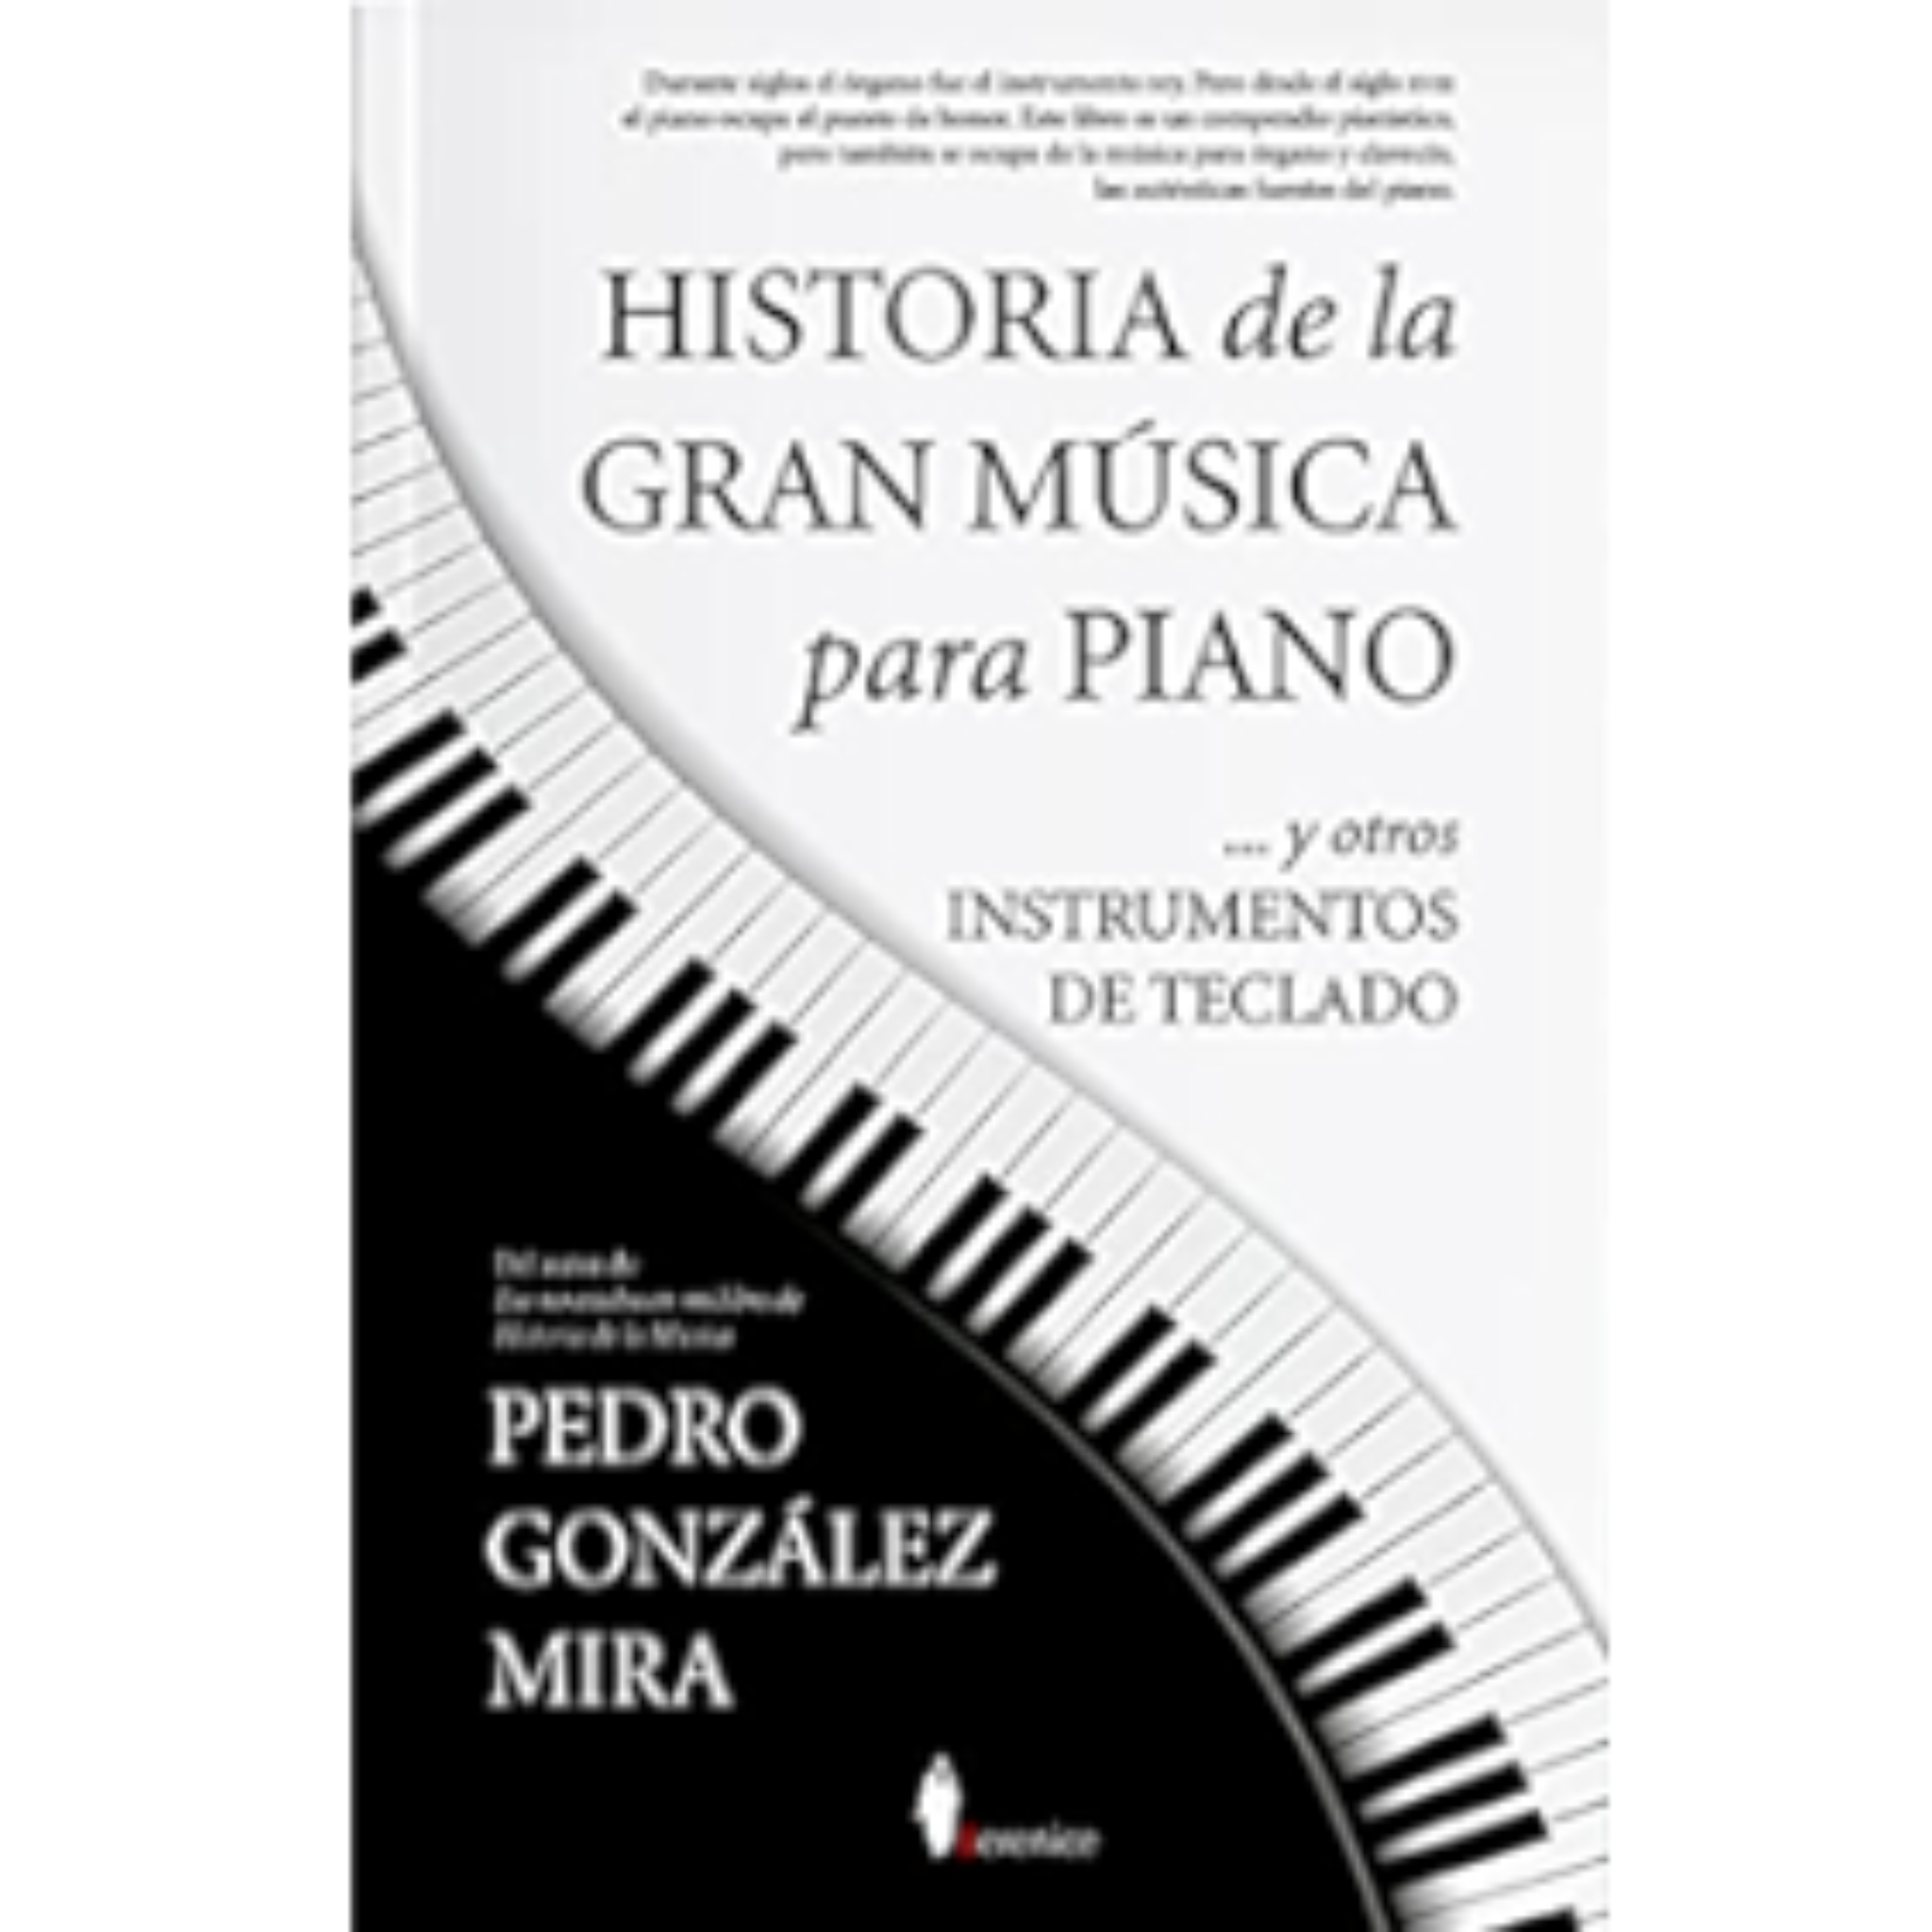 HISTORIA DE LA GRAN MUSICA PARA PIANO